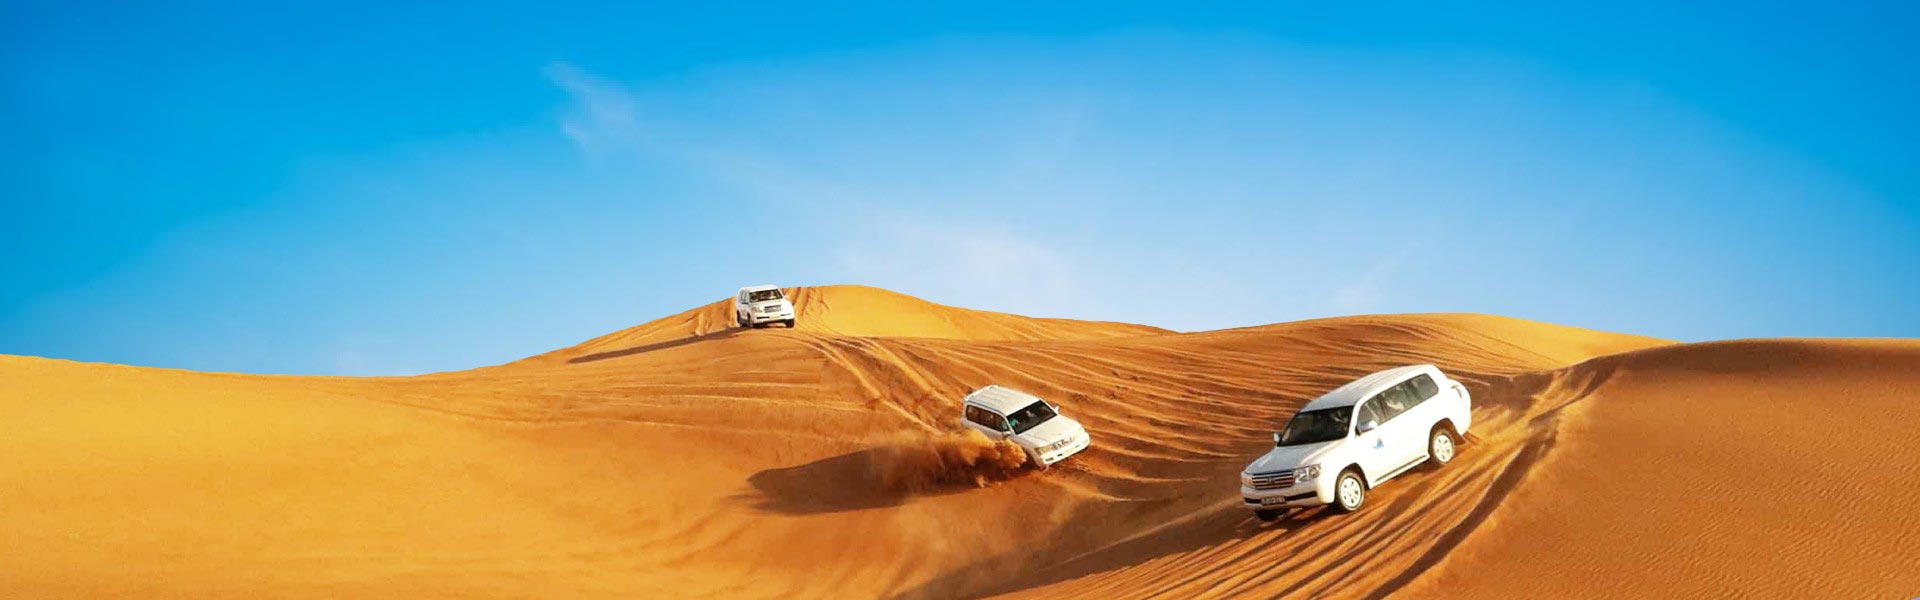 3 սպիտակ մեքենա Դուբայի անապատում զբոսաշրջիկին տանում են անապատային սաֆարիի - Տուր փաթեթ